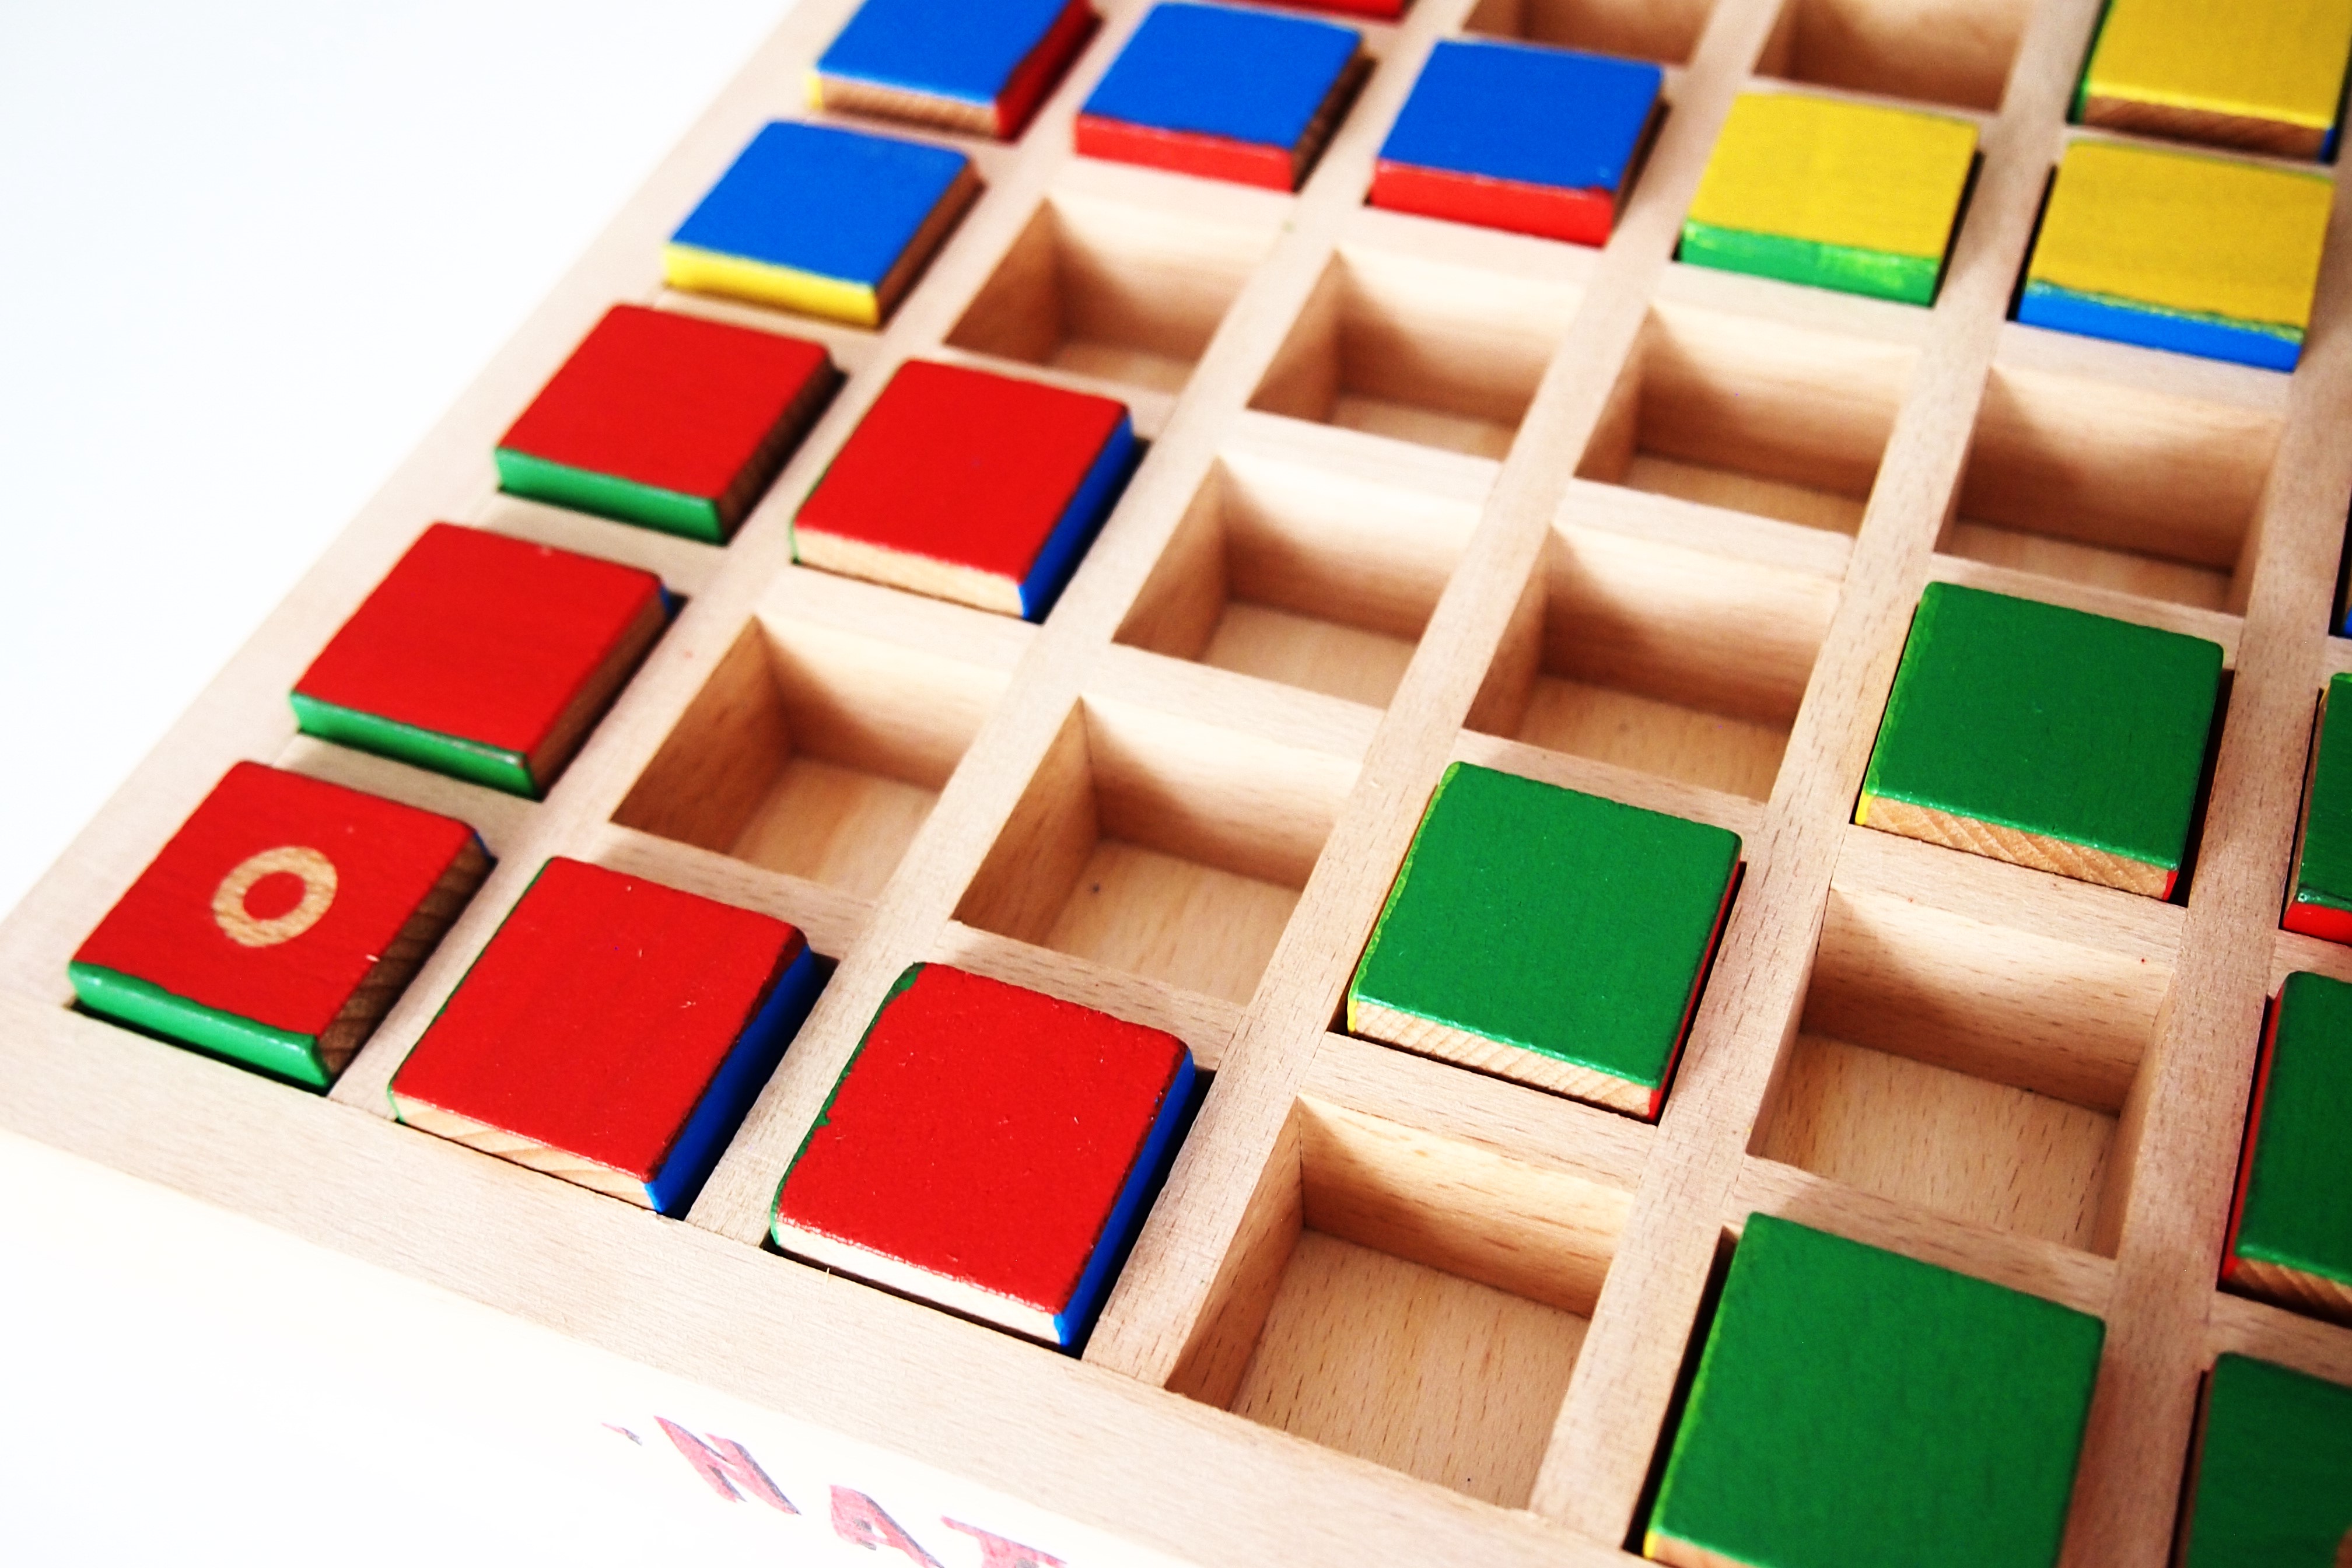 En su turno, cada jugador puede mover un cubo una casilla. 